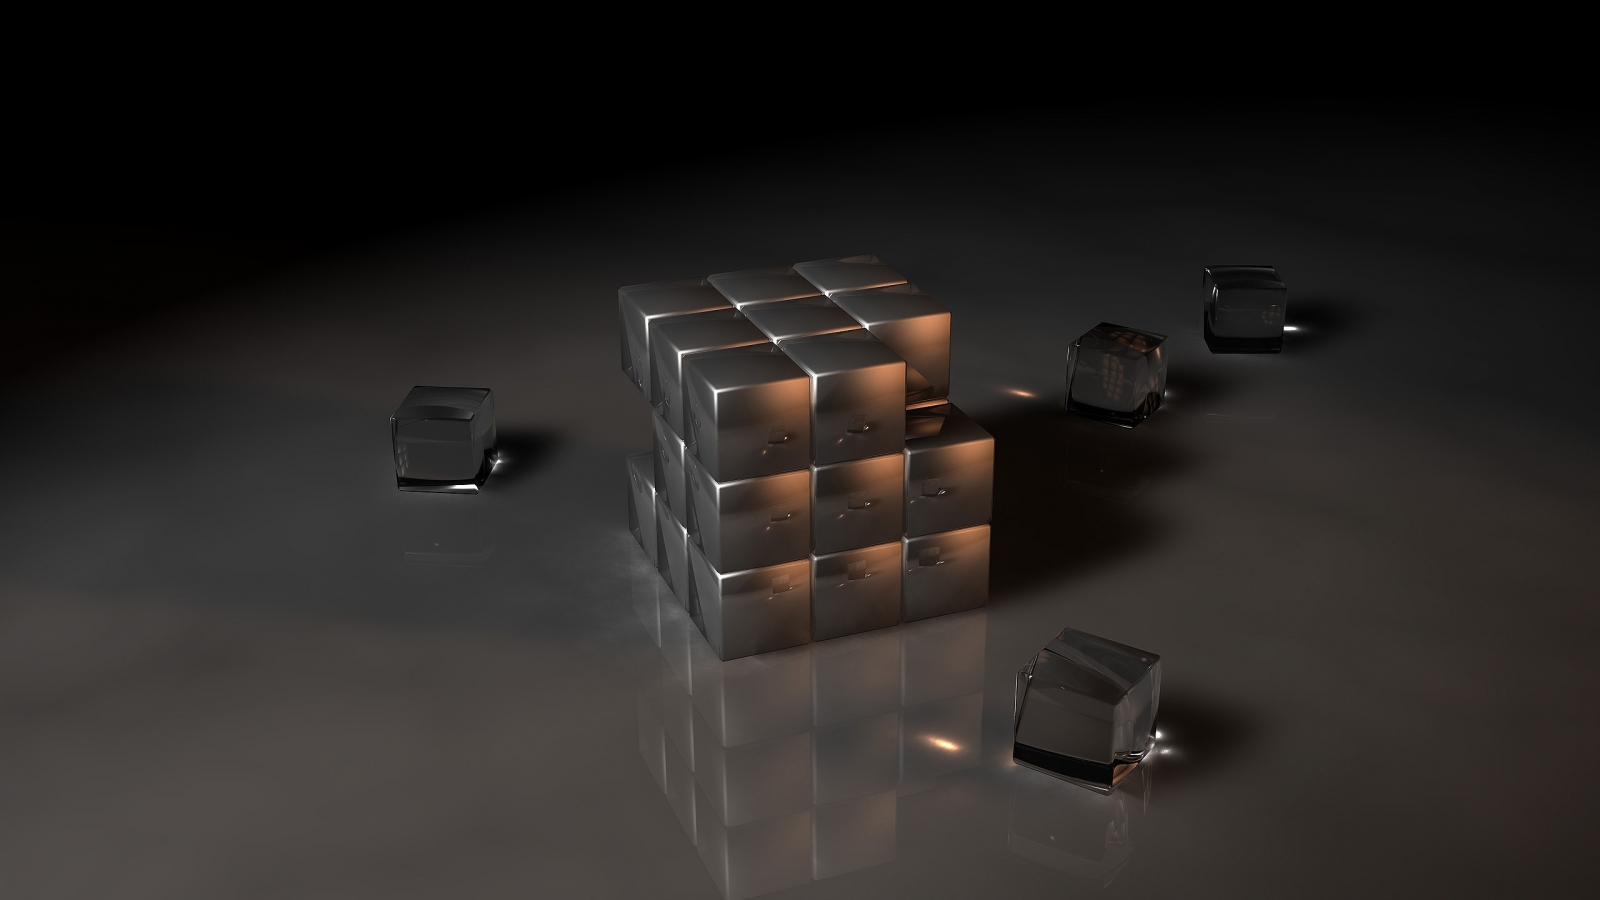 Black Rubiks Cube for 1600 x 900 HDTV resolution